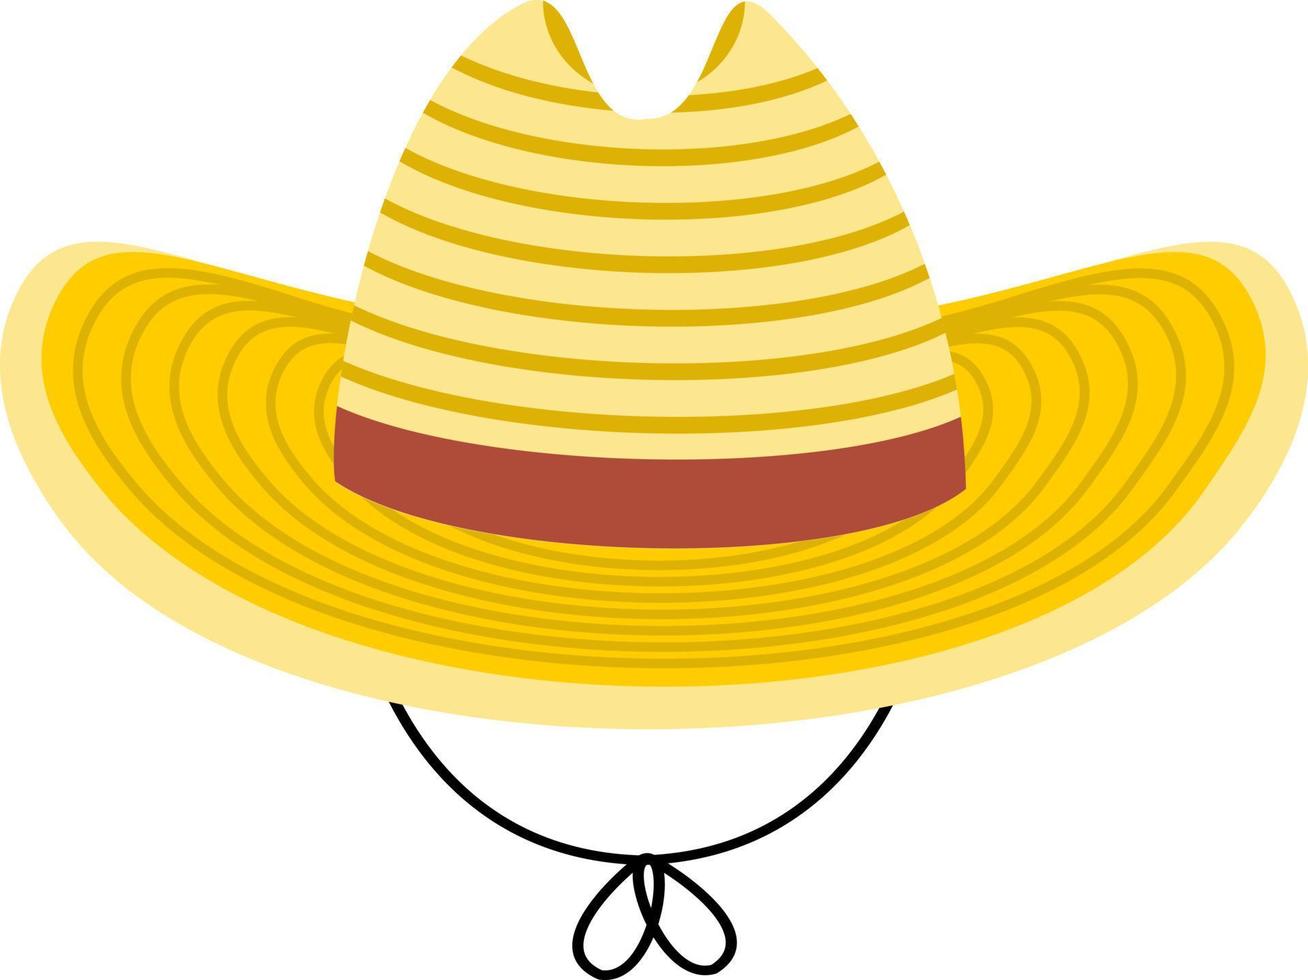 gul sugrör hatt tecknad serie vektor